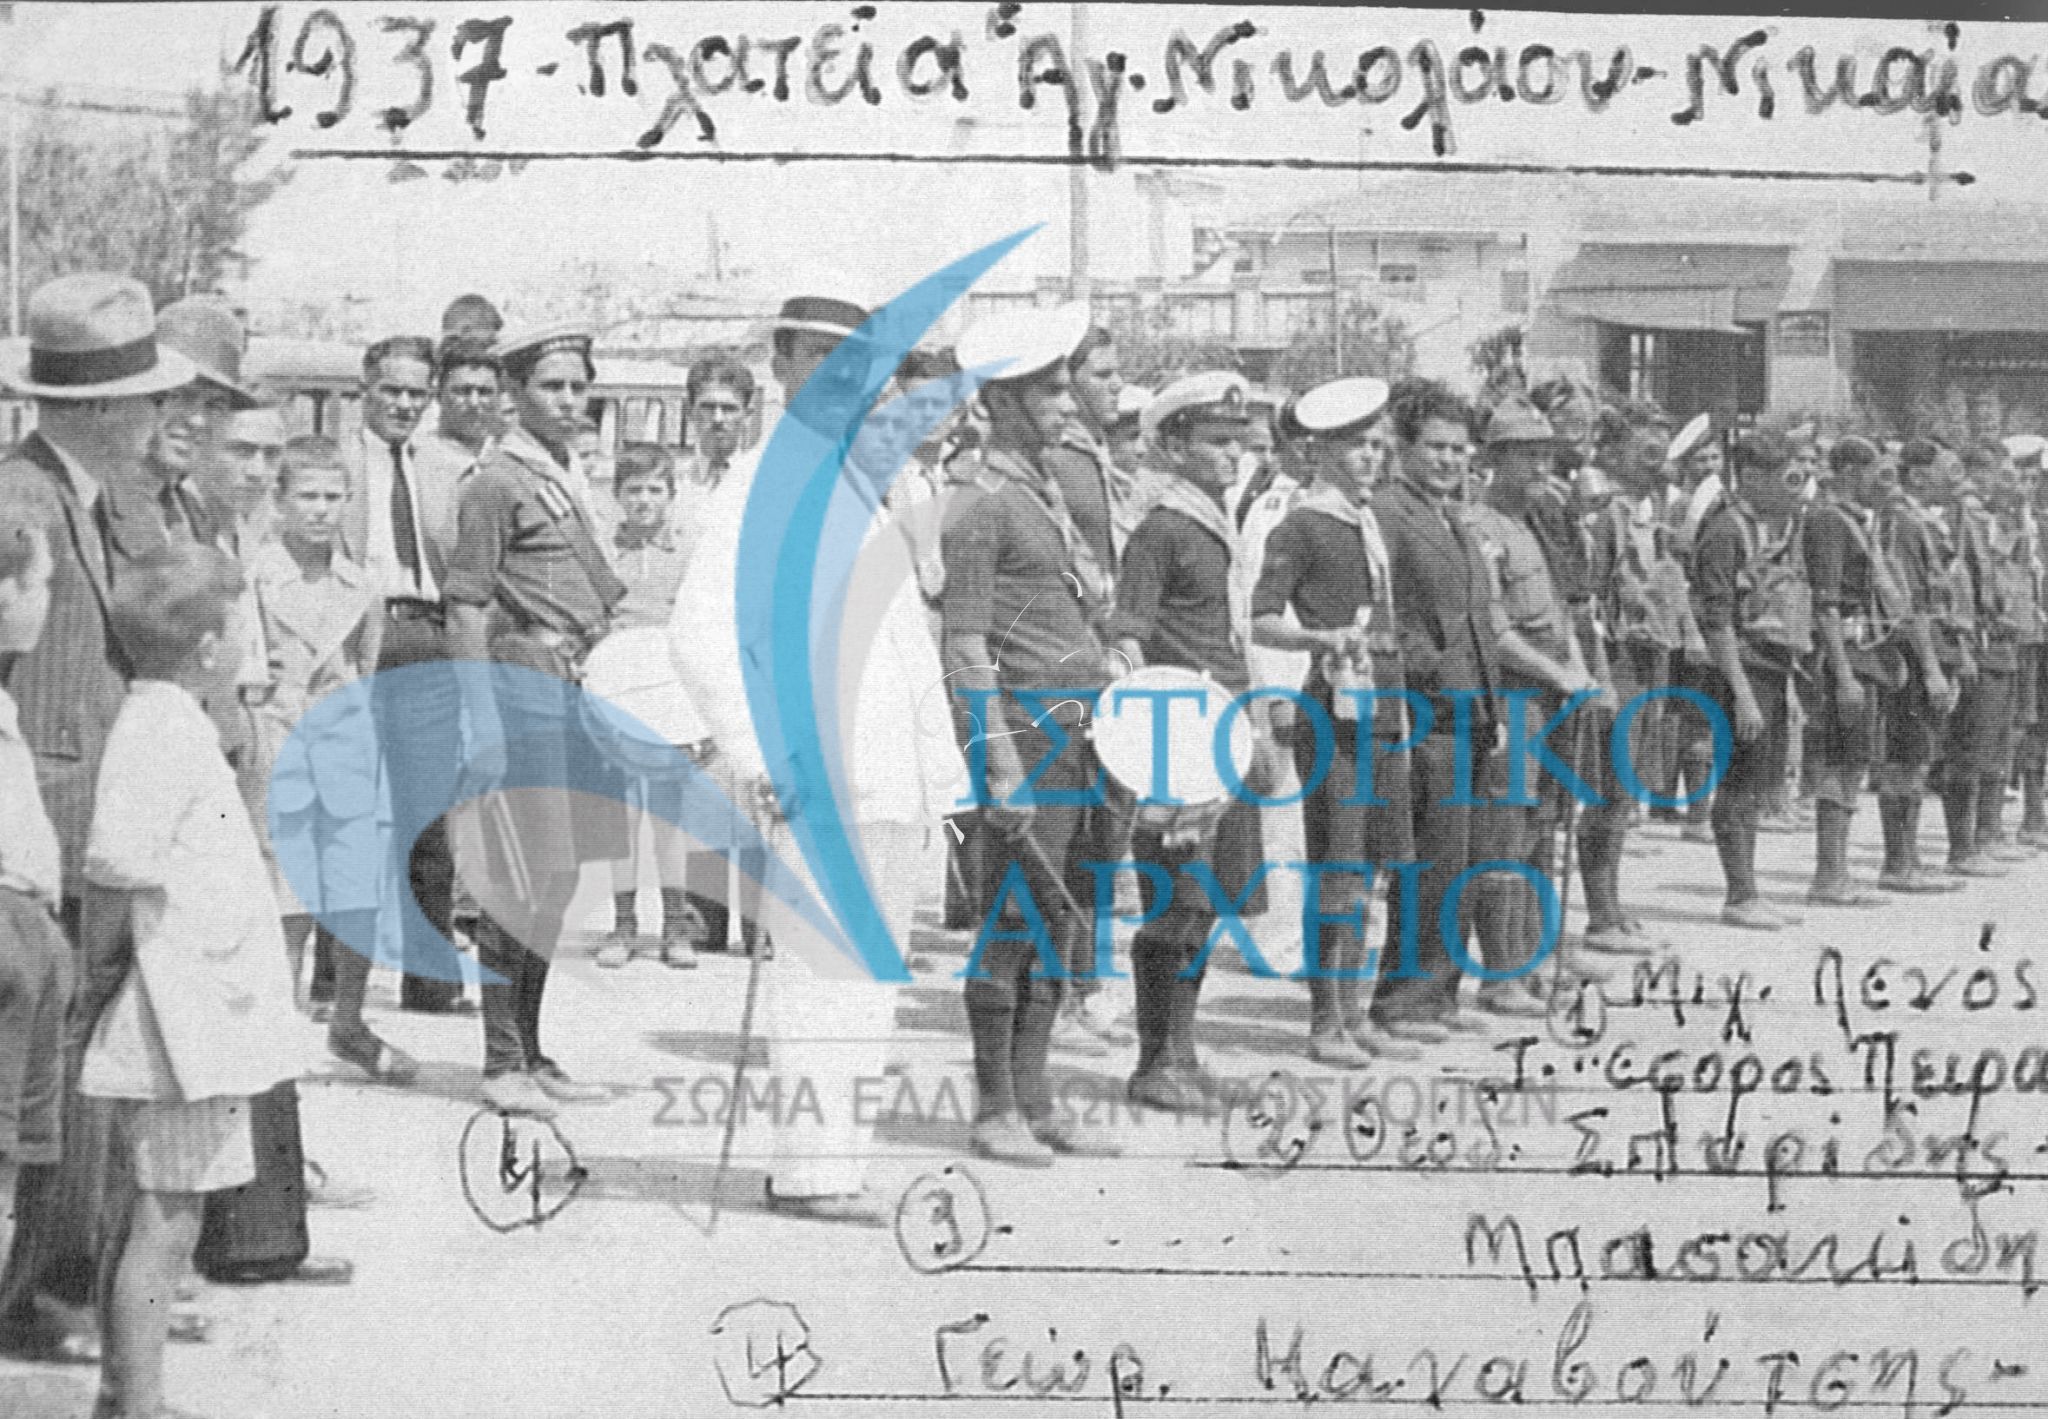 Νίκαια -Κοκκινιά Πειραιάς  Νίκαια  Πλατεία Αγίου Νικολάου 1937.1. Μιχ Λενός Τοπικός Εφορος Πειραιά, 2 Θ Σπυρίδης 3. Μπασακίδης, Γ Καναβούτσης